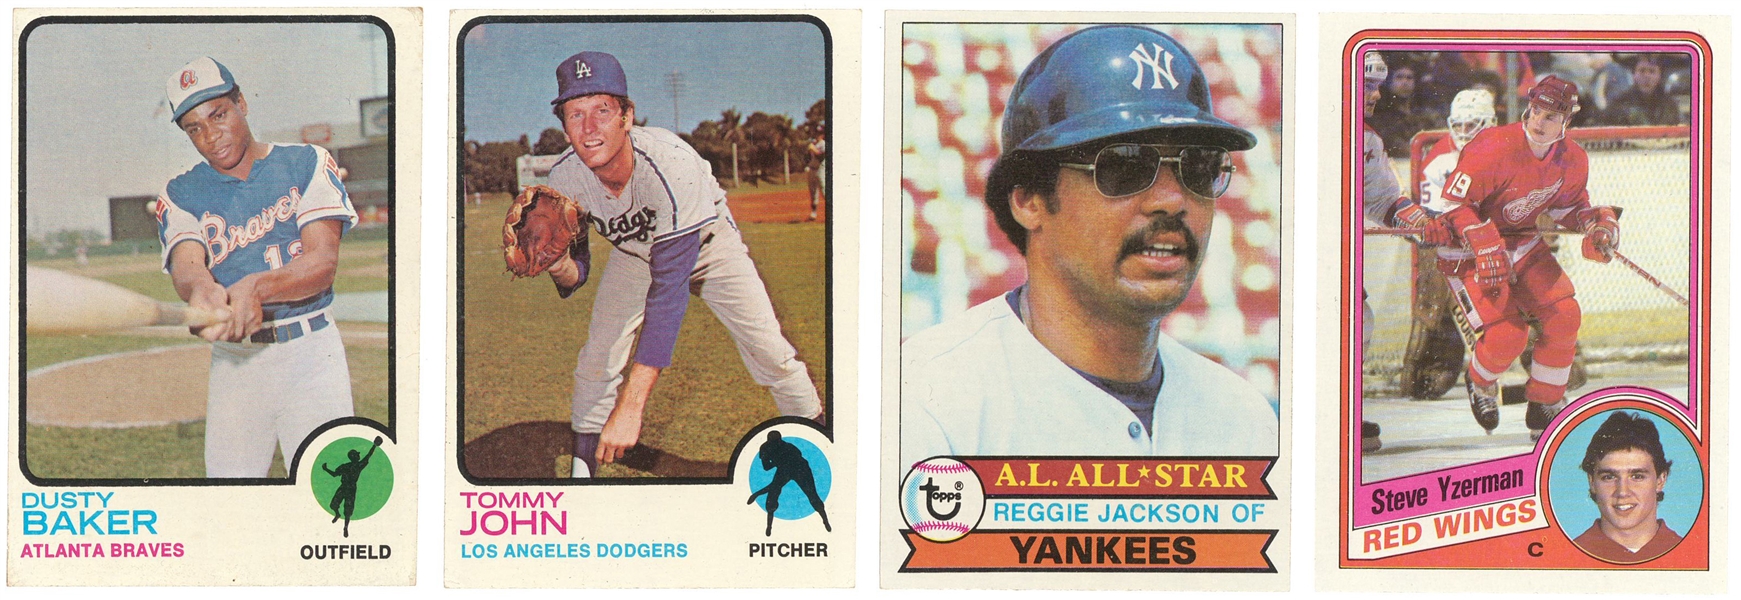 1984 Topps Dusty Baker - Baseball Card